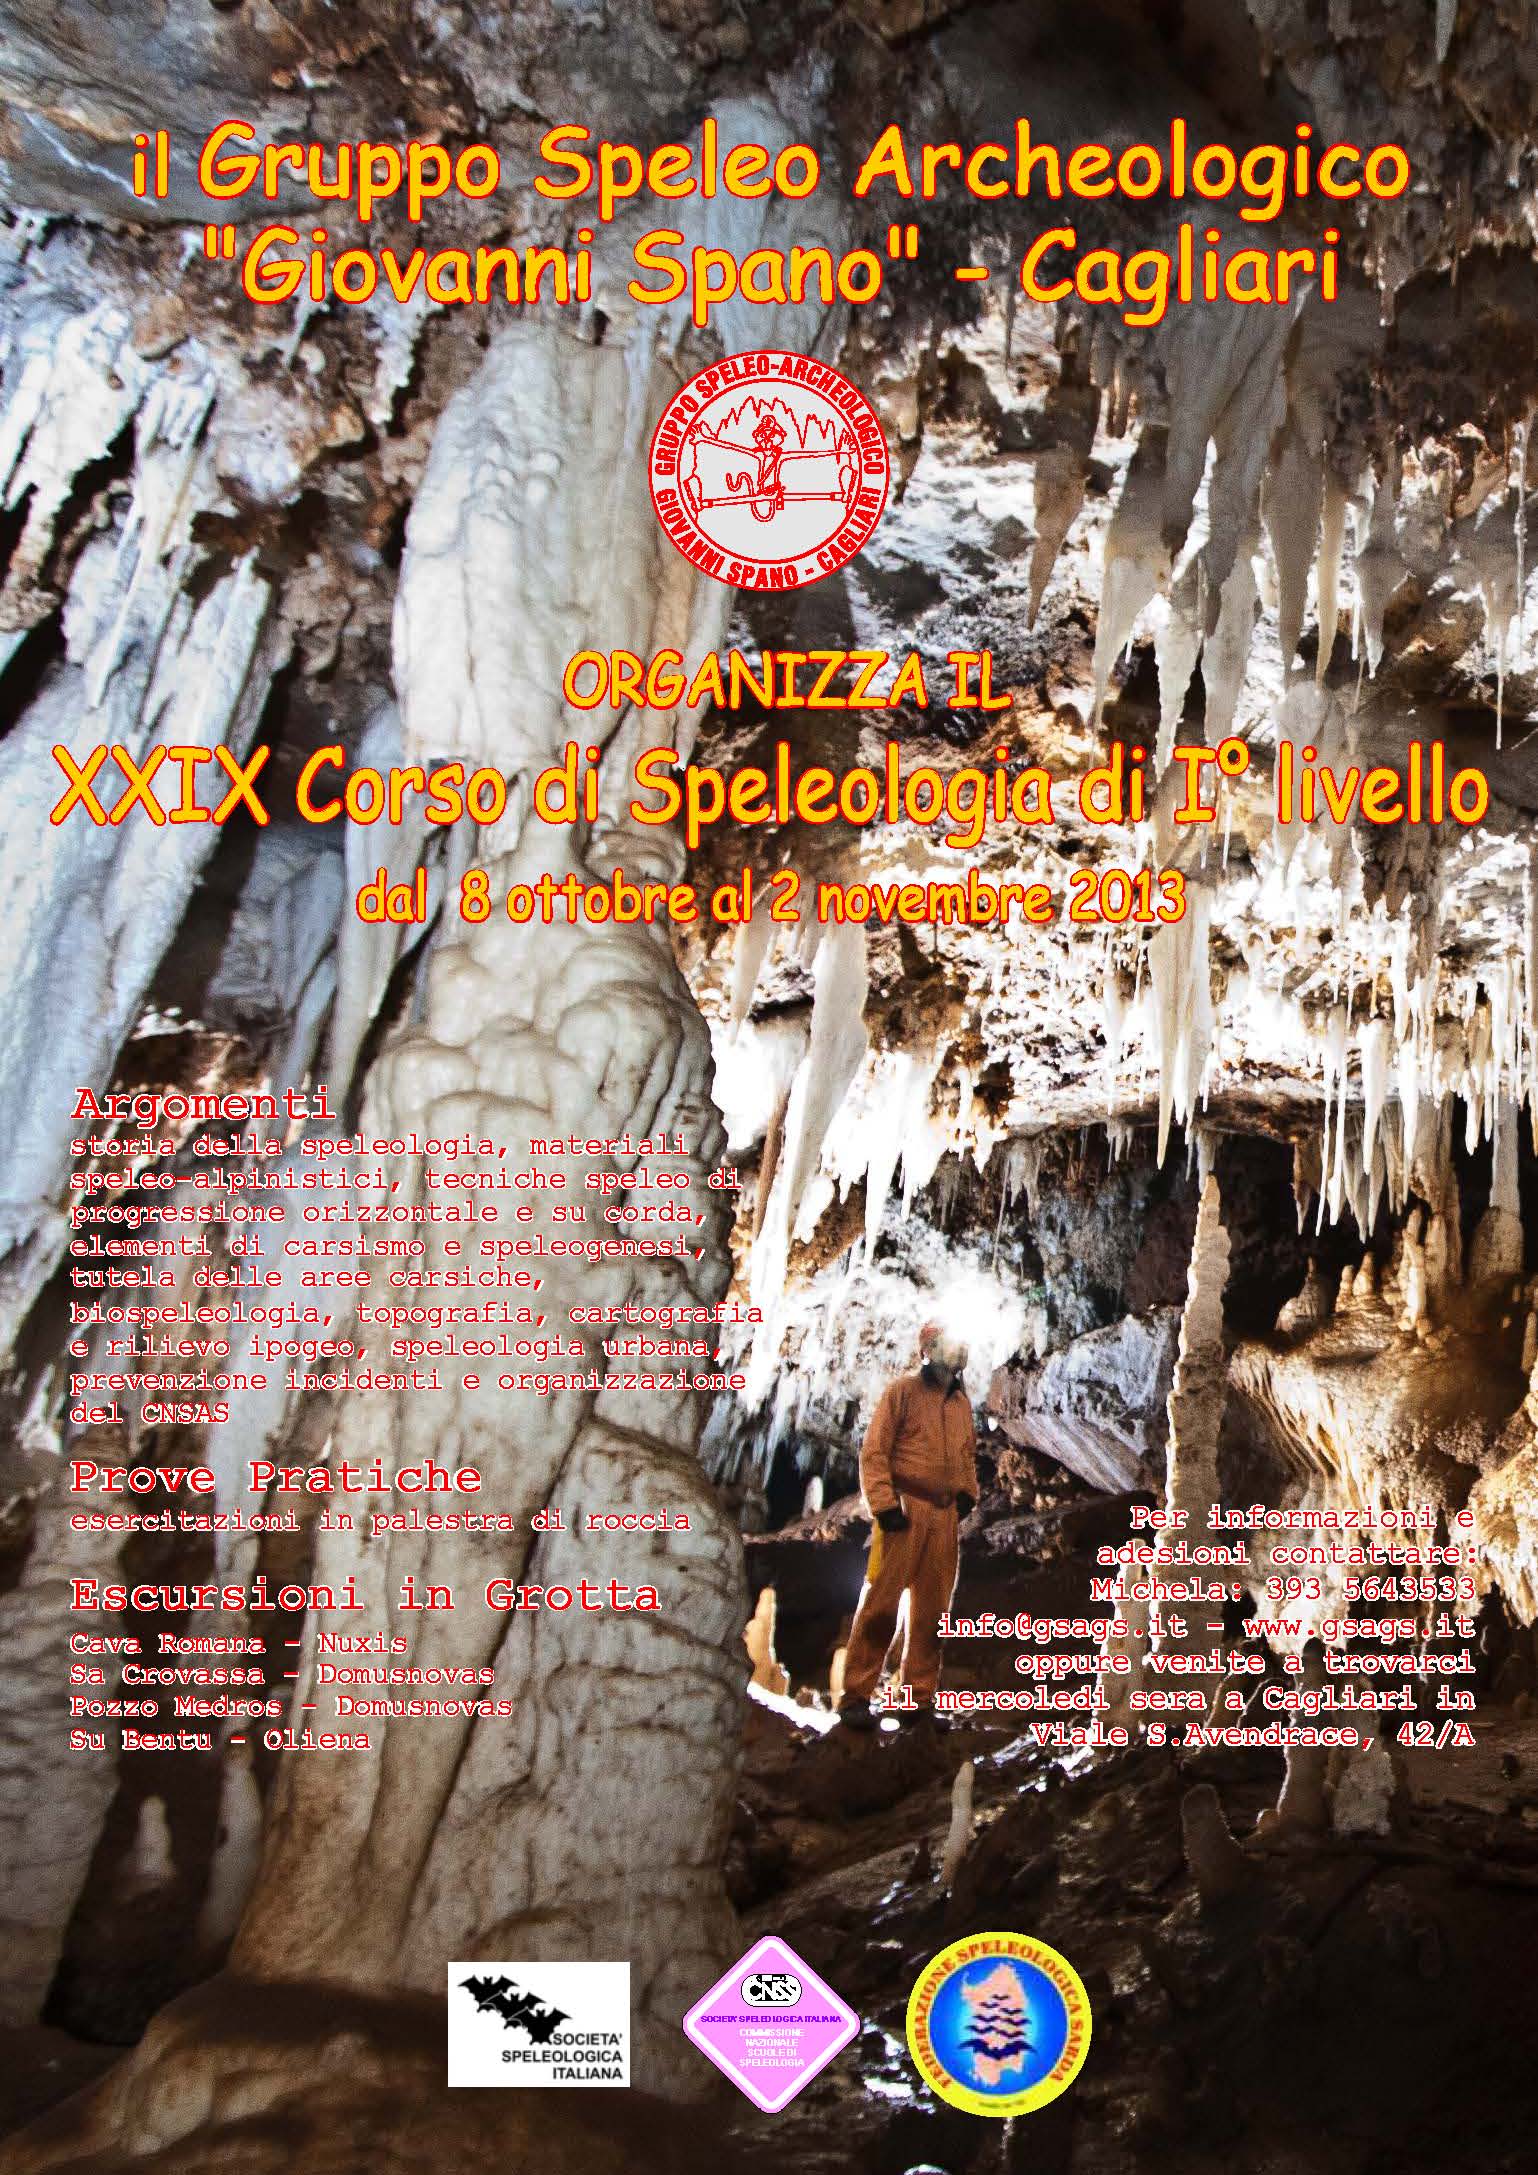 XXIX Corso di Speleologia di I Livello 2013